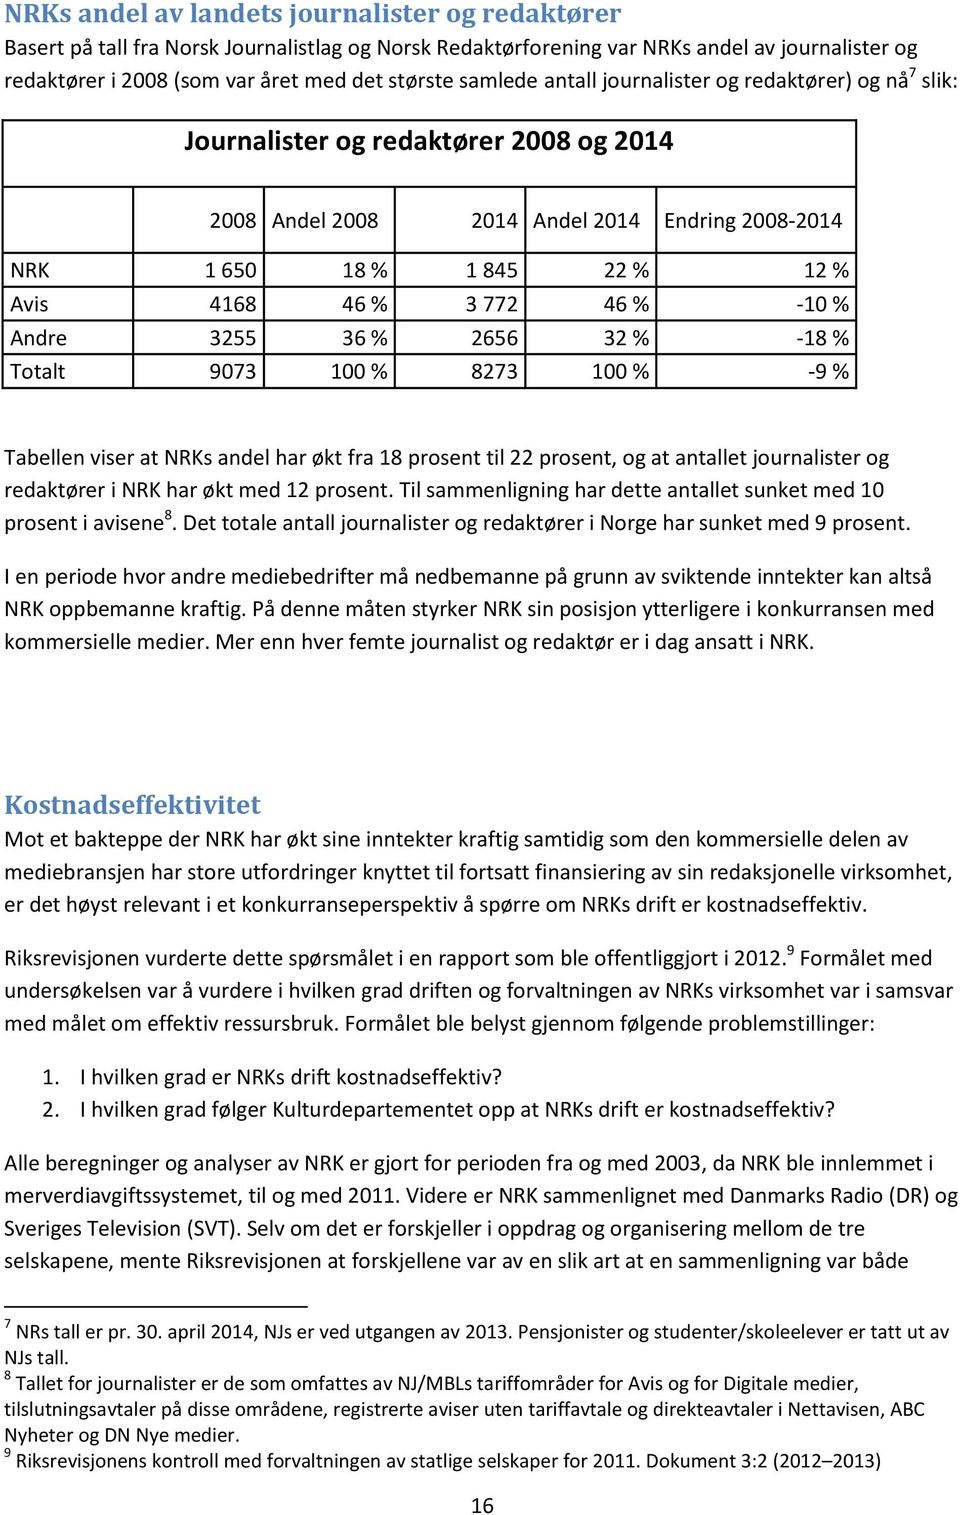 46 % -10 % Andre 3255 36 % 2656 32 % -18 % Totalt 9073 100 % 8273 100 % -9 % Tabellen viser at NRKs andel har økt fra 18 prosent til 22 prosent, og at antallet journalister og redaktører i NRK har